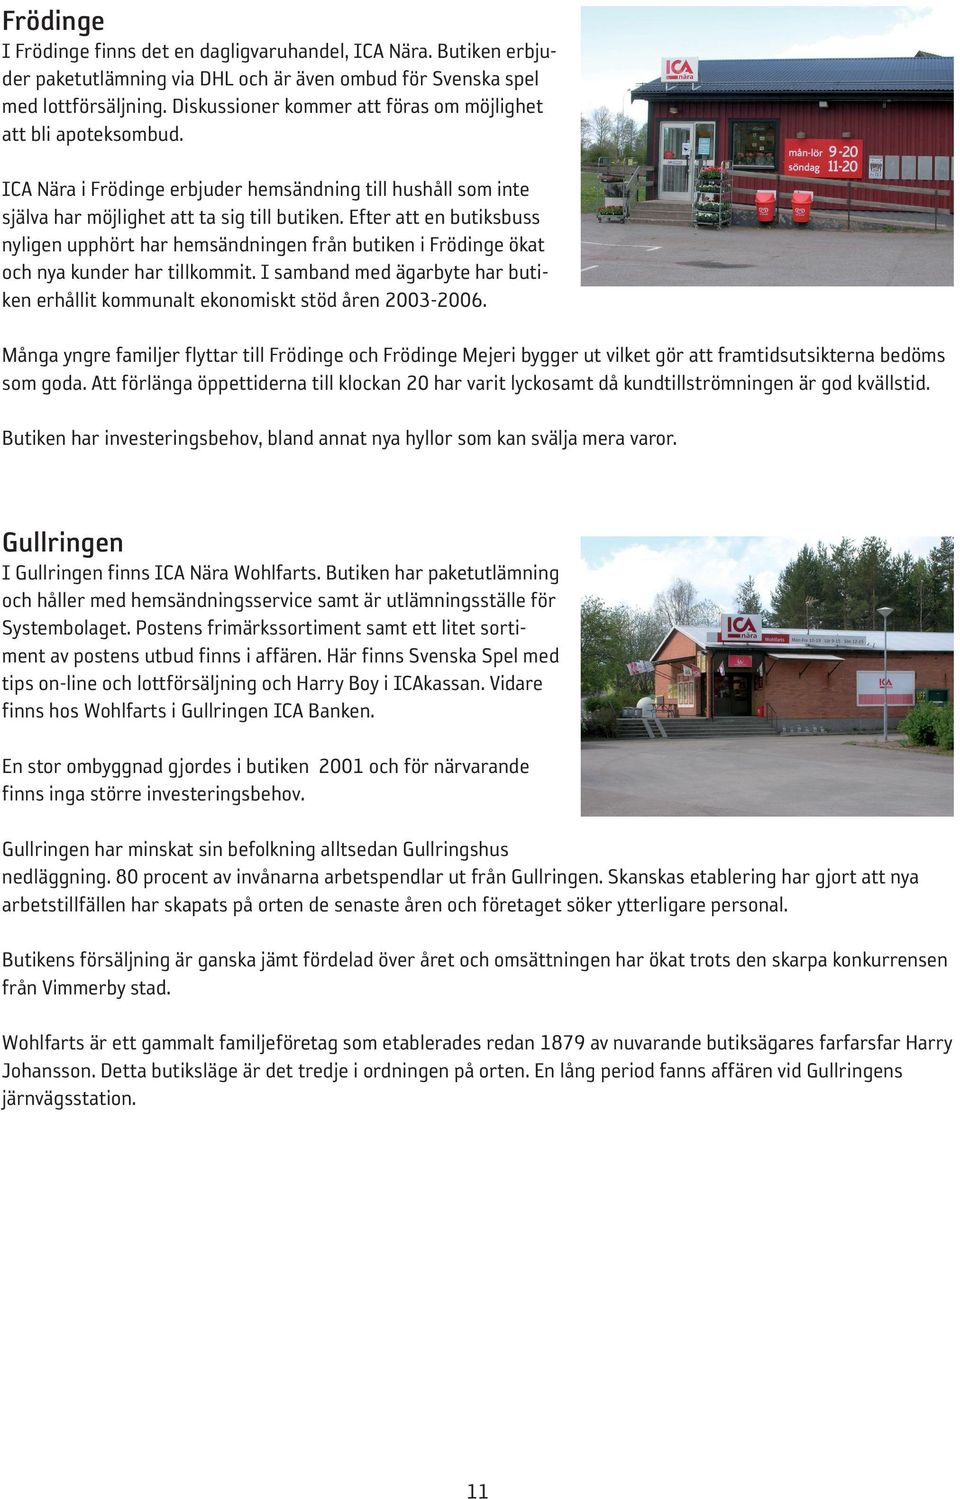 Efter att en butiksbuss nyligen upphört har hemsändningen från butiken i Frödinge ökat och nya kunder har tillkommit.